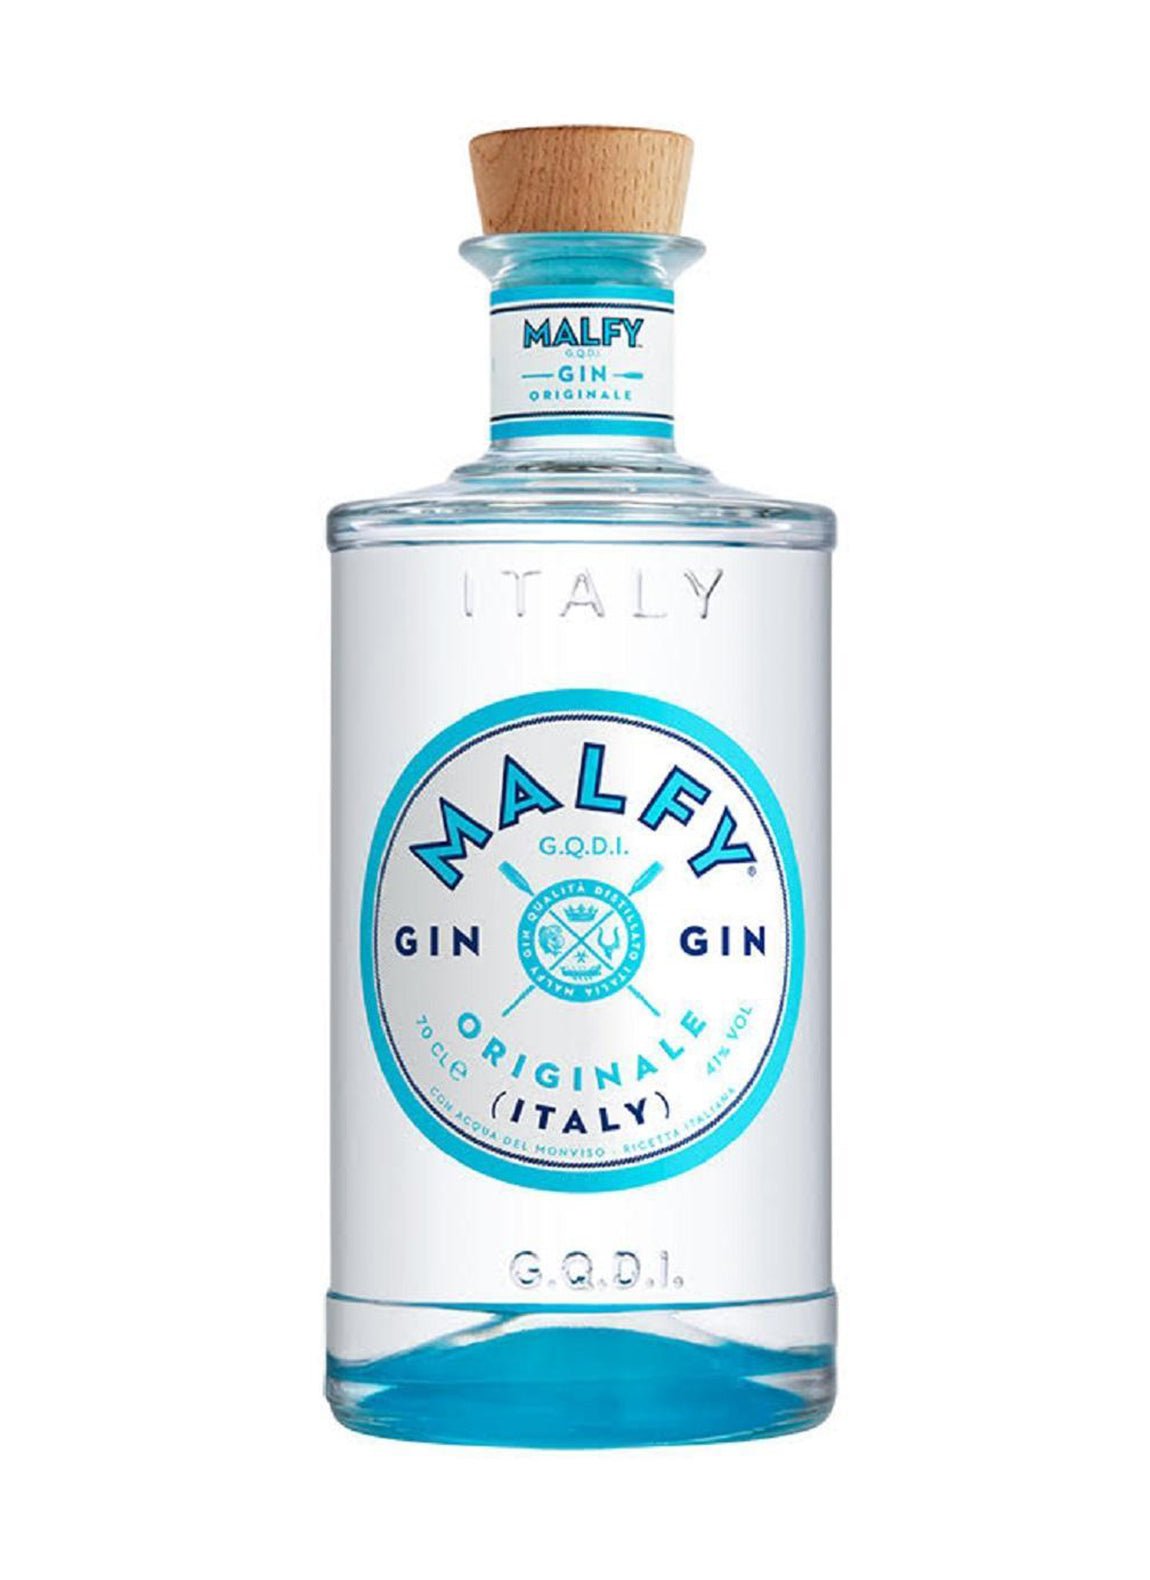 Malfy Originale Gin 41% ABV - Gin - Liquor Wine Cave